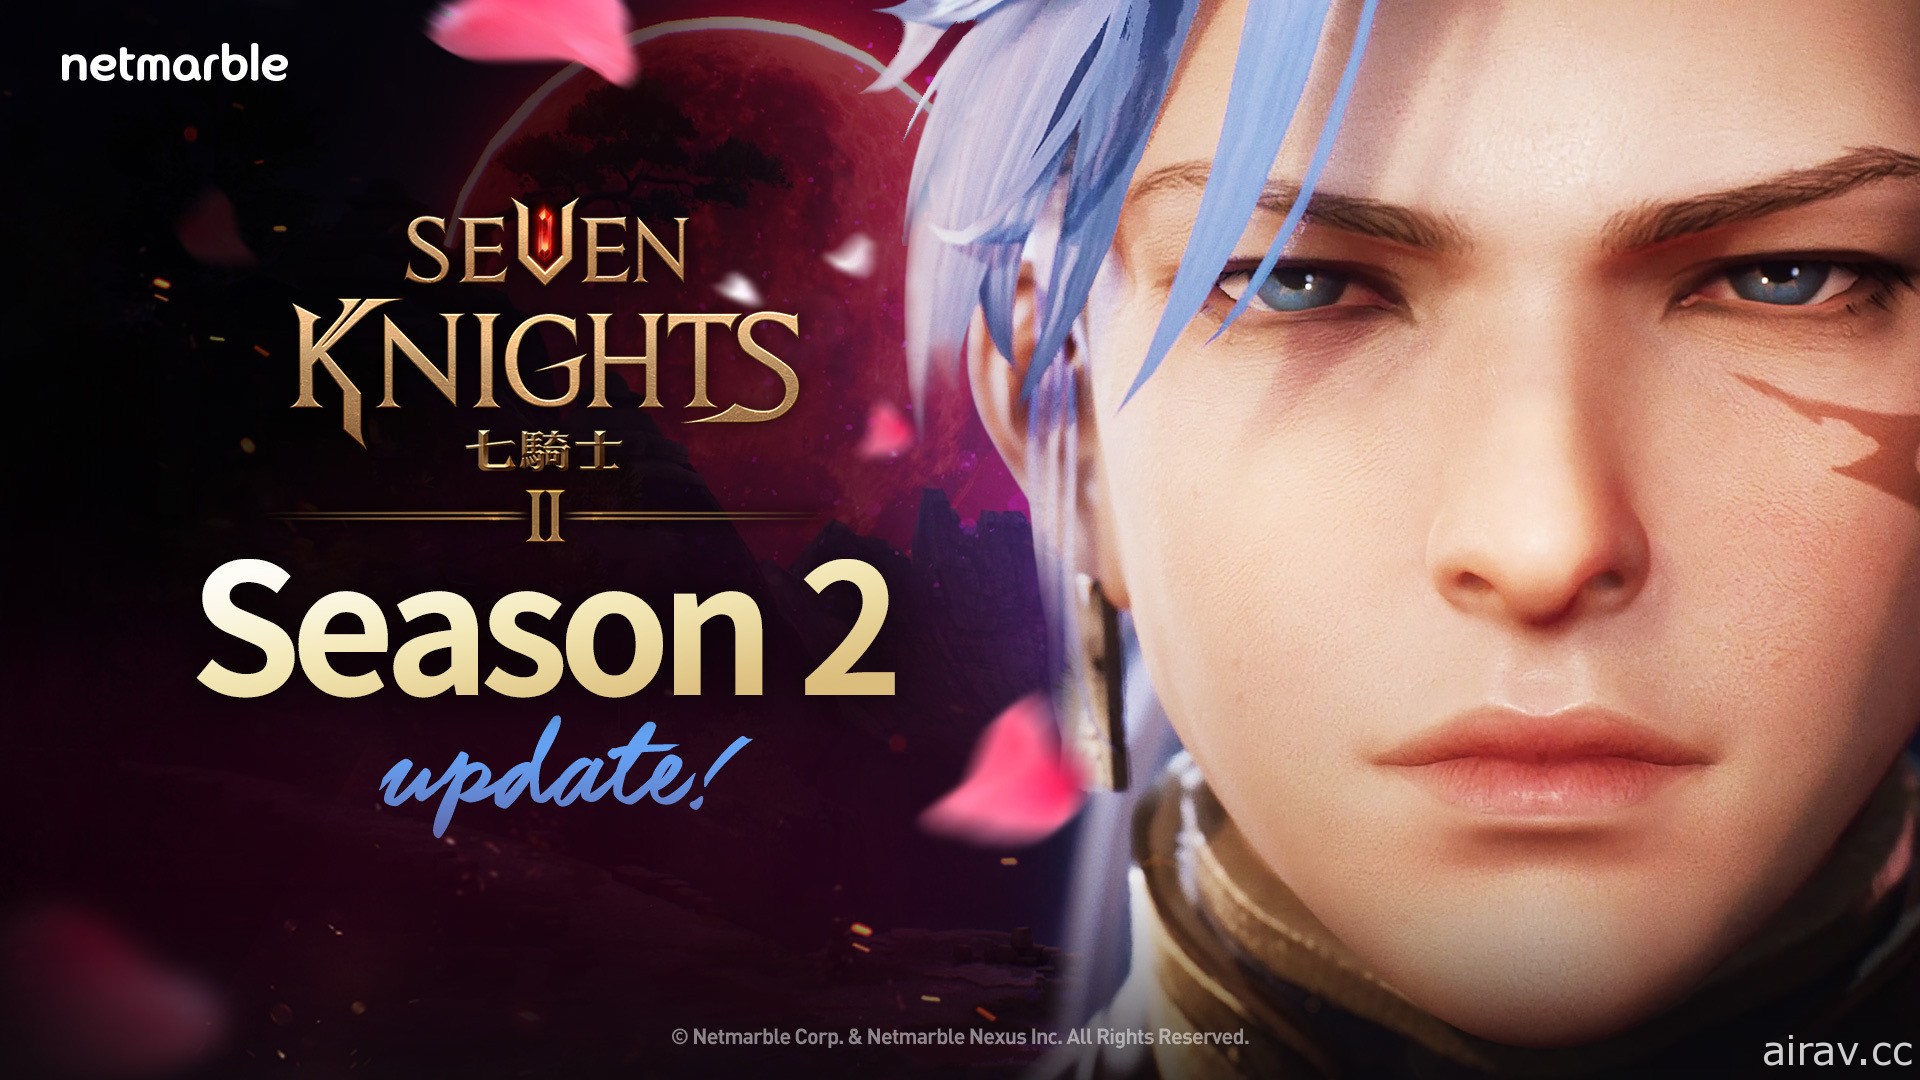 《七骑士 2》开启第 2 季 全新游戏内容与活动同步推出